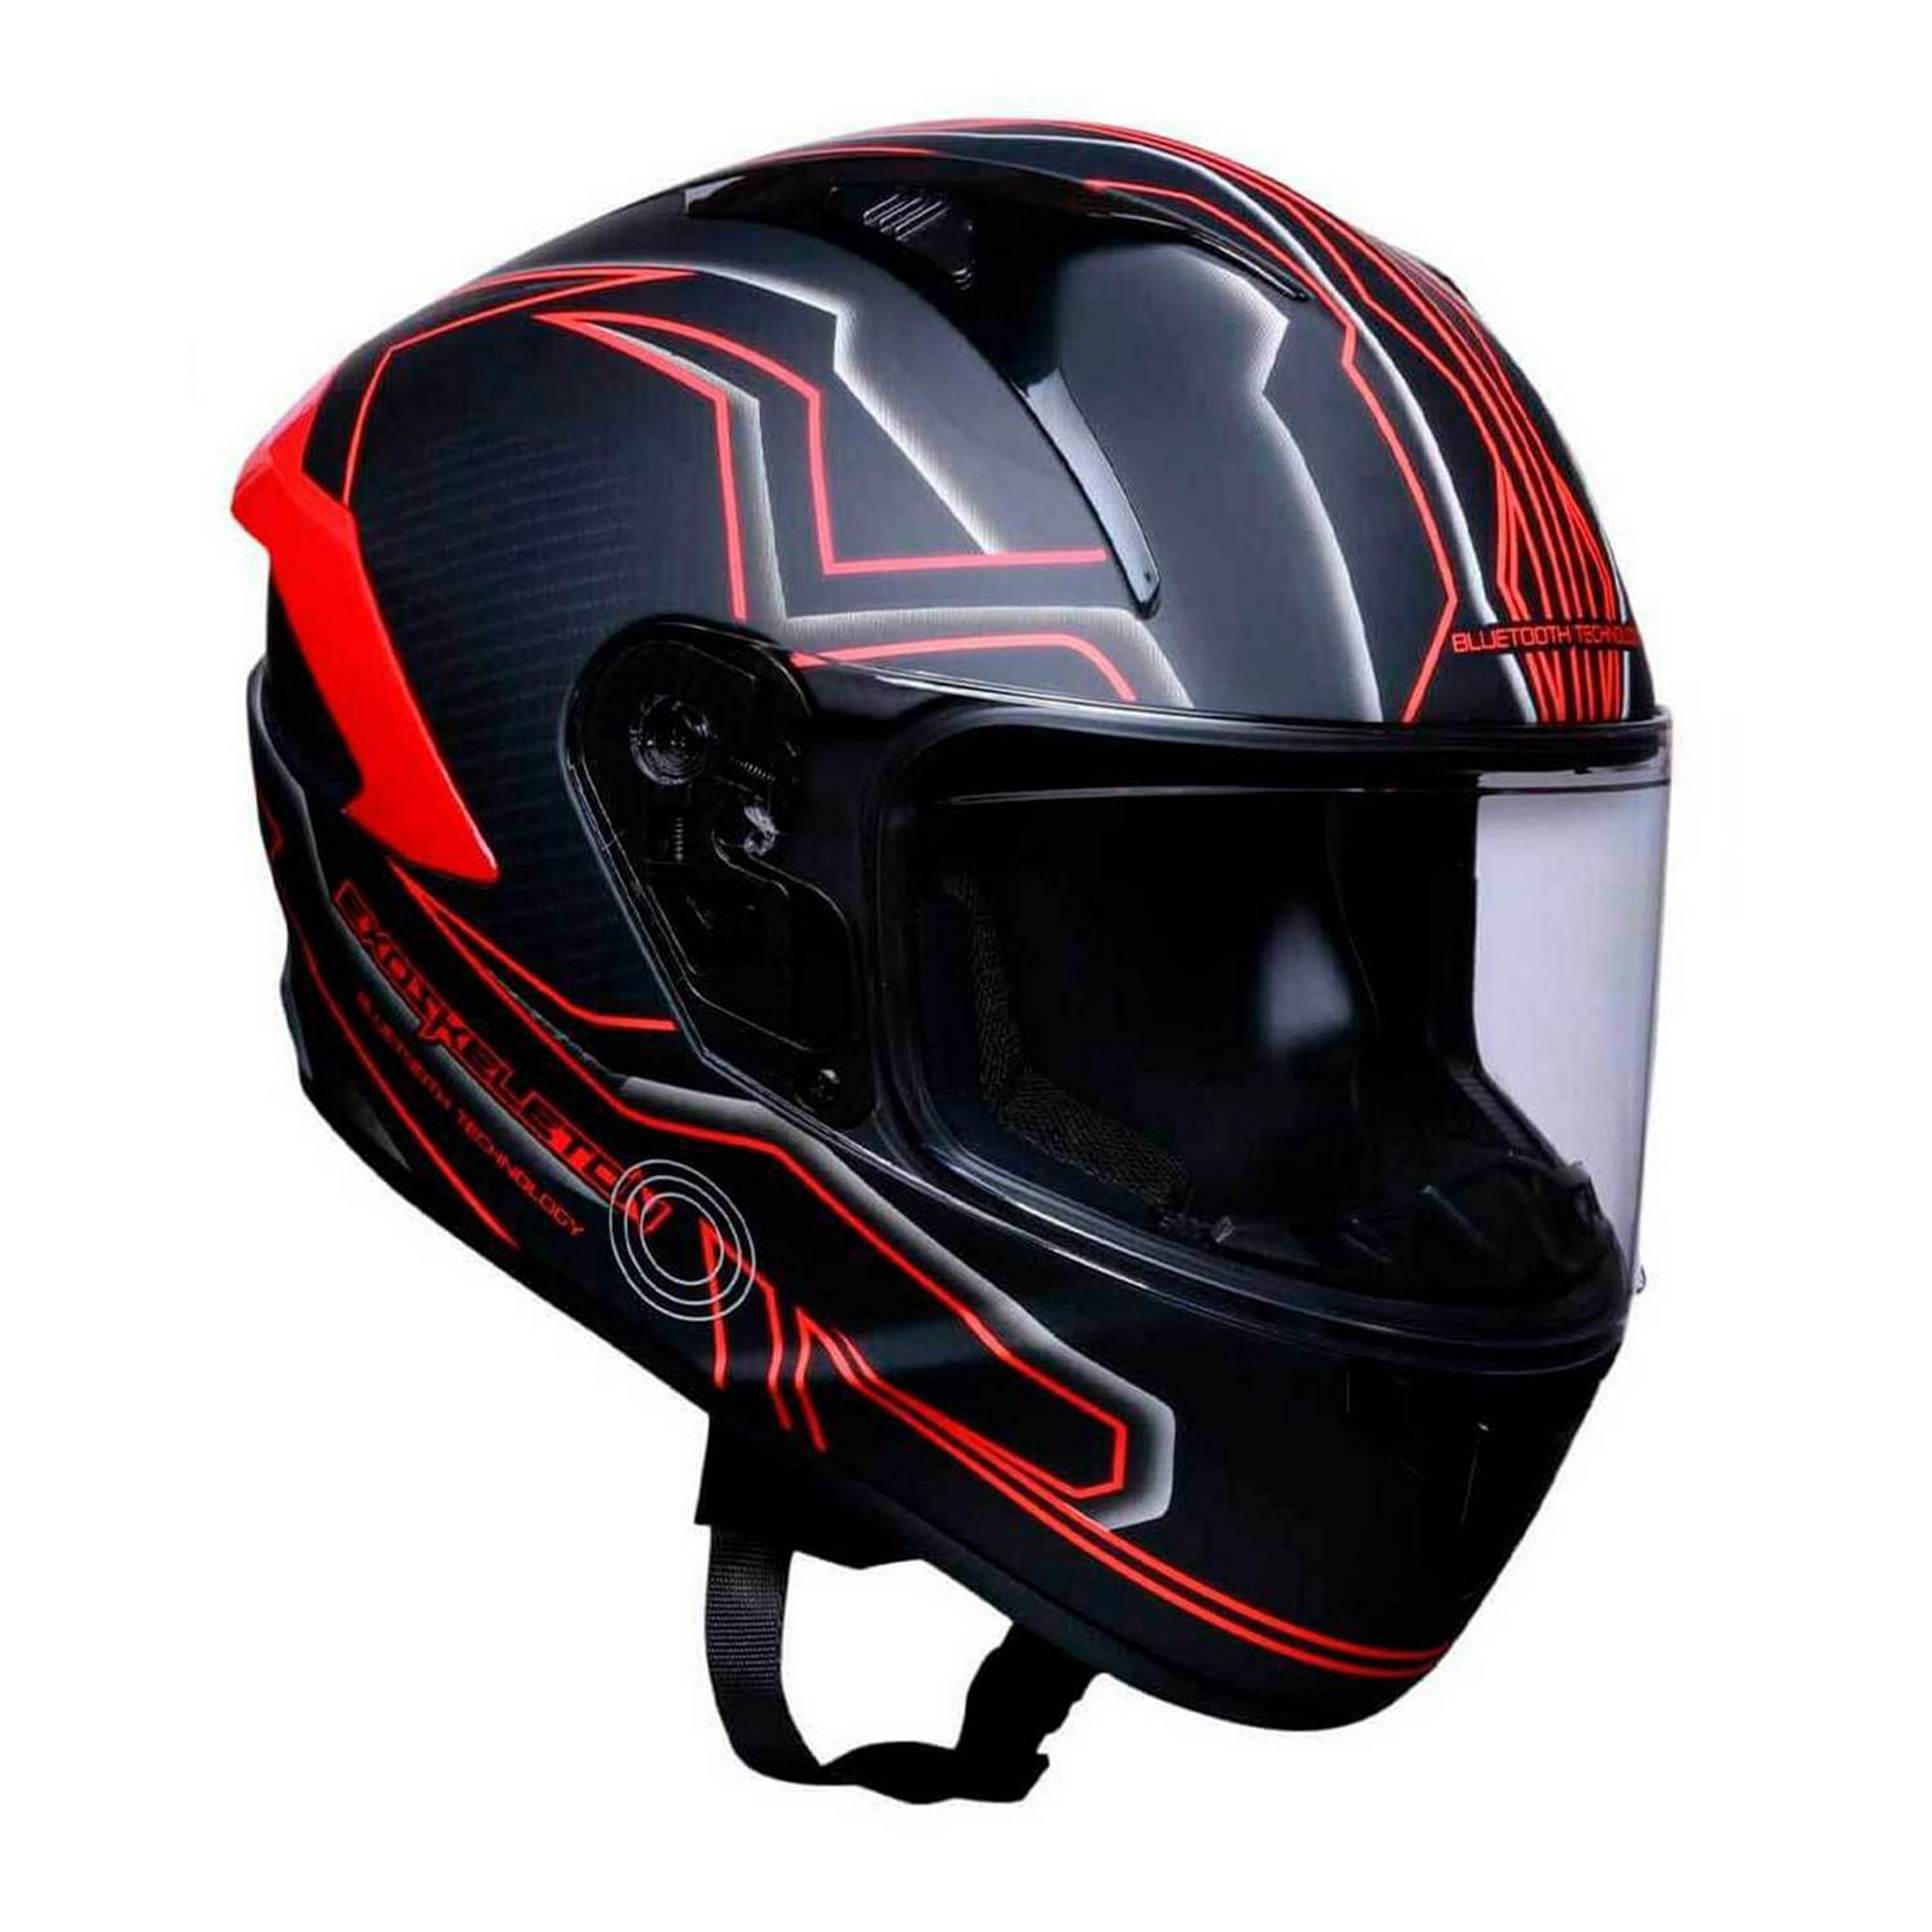 Casco para Motociclista Exoskeleton Grande con Bluetooth Negro